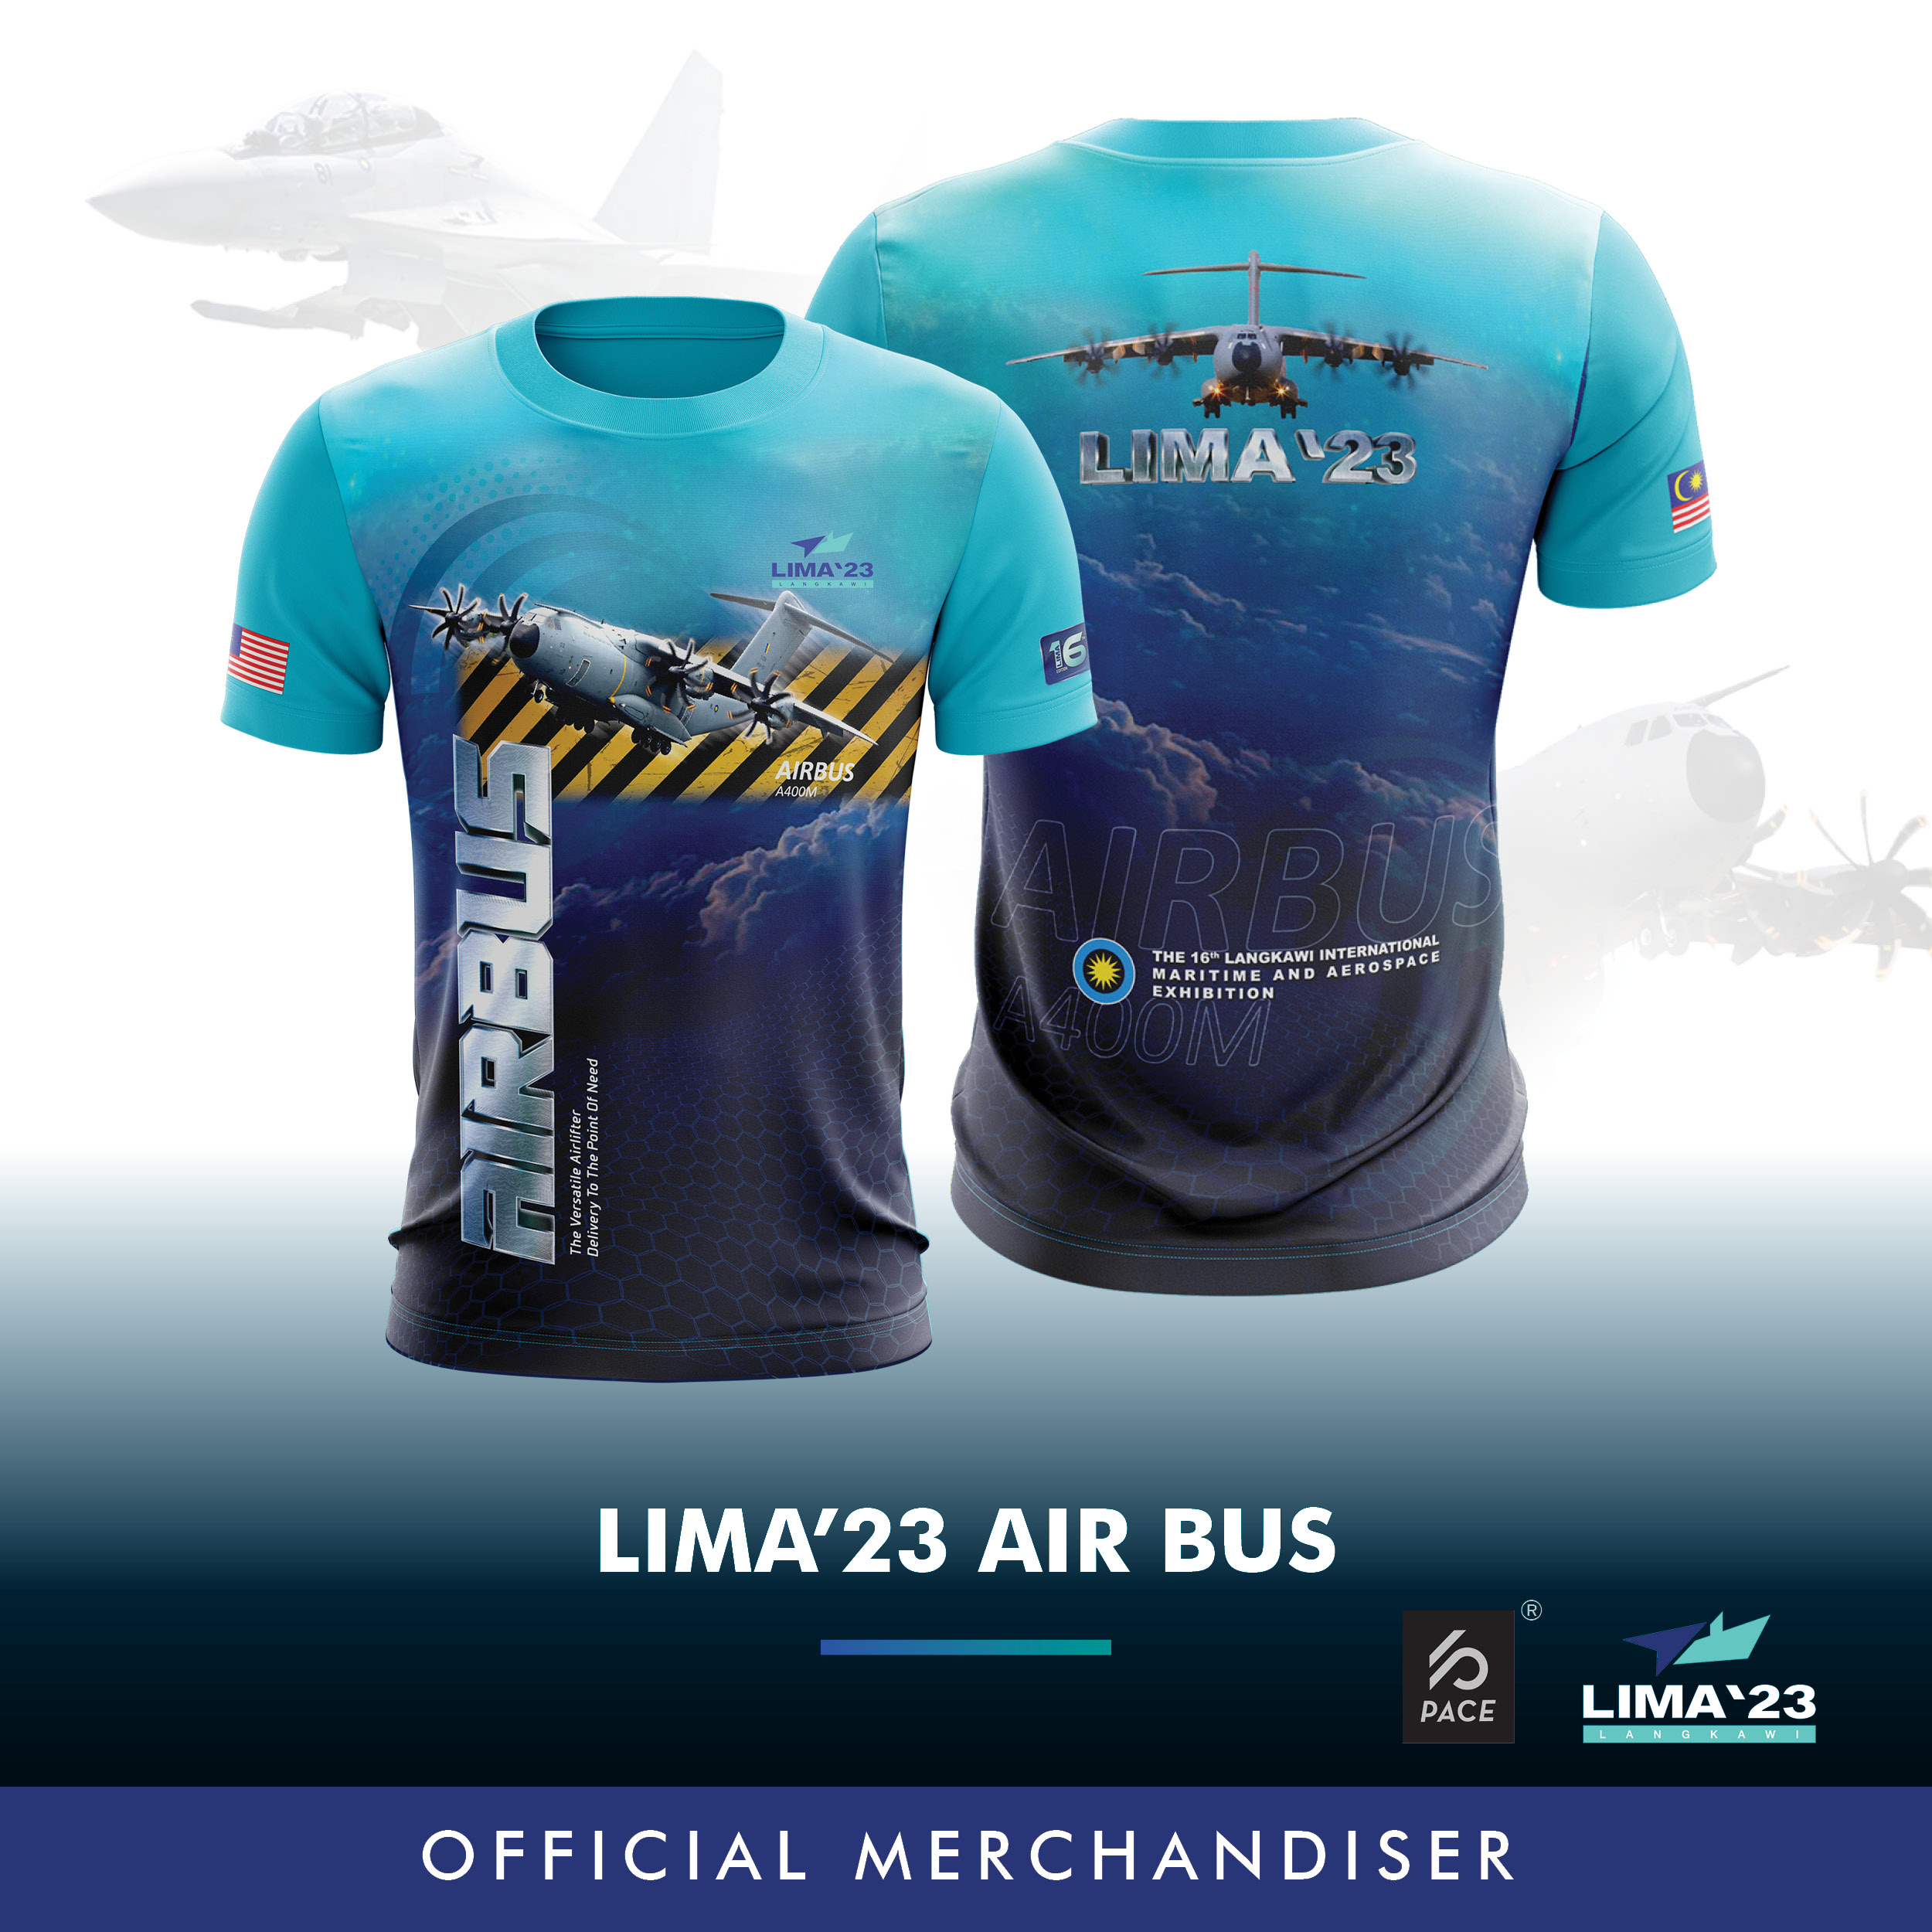 LIMA'23 Air Bus Tee Shirt